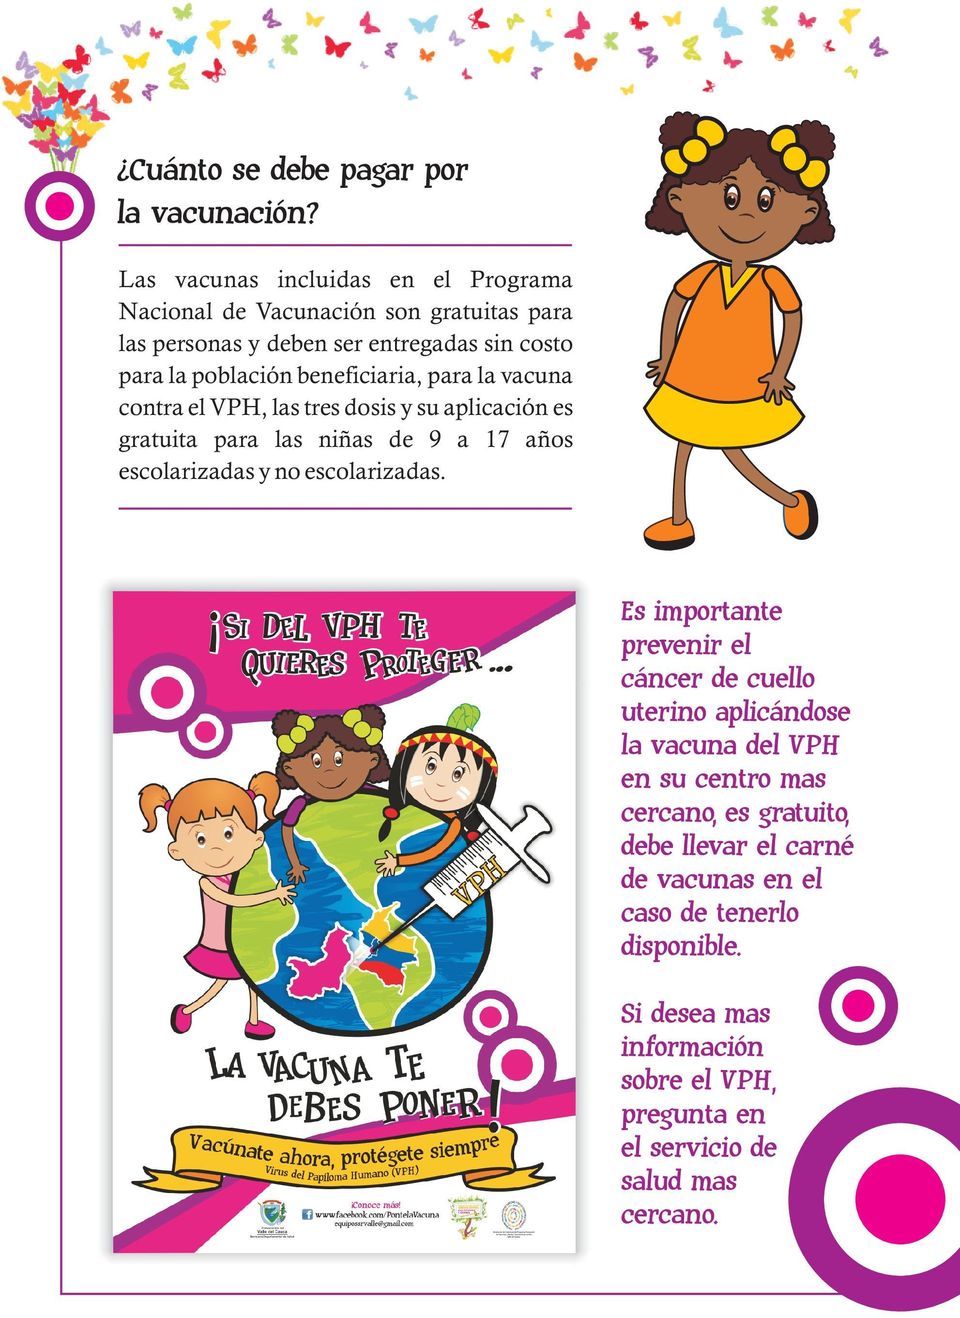 beneficiaria, para la vacuna contra el VPH, las tres dosis y su aplicación es gratuita para las niñas de 9 a 17 años escolarizadas y no escolarizadas.